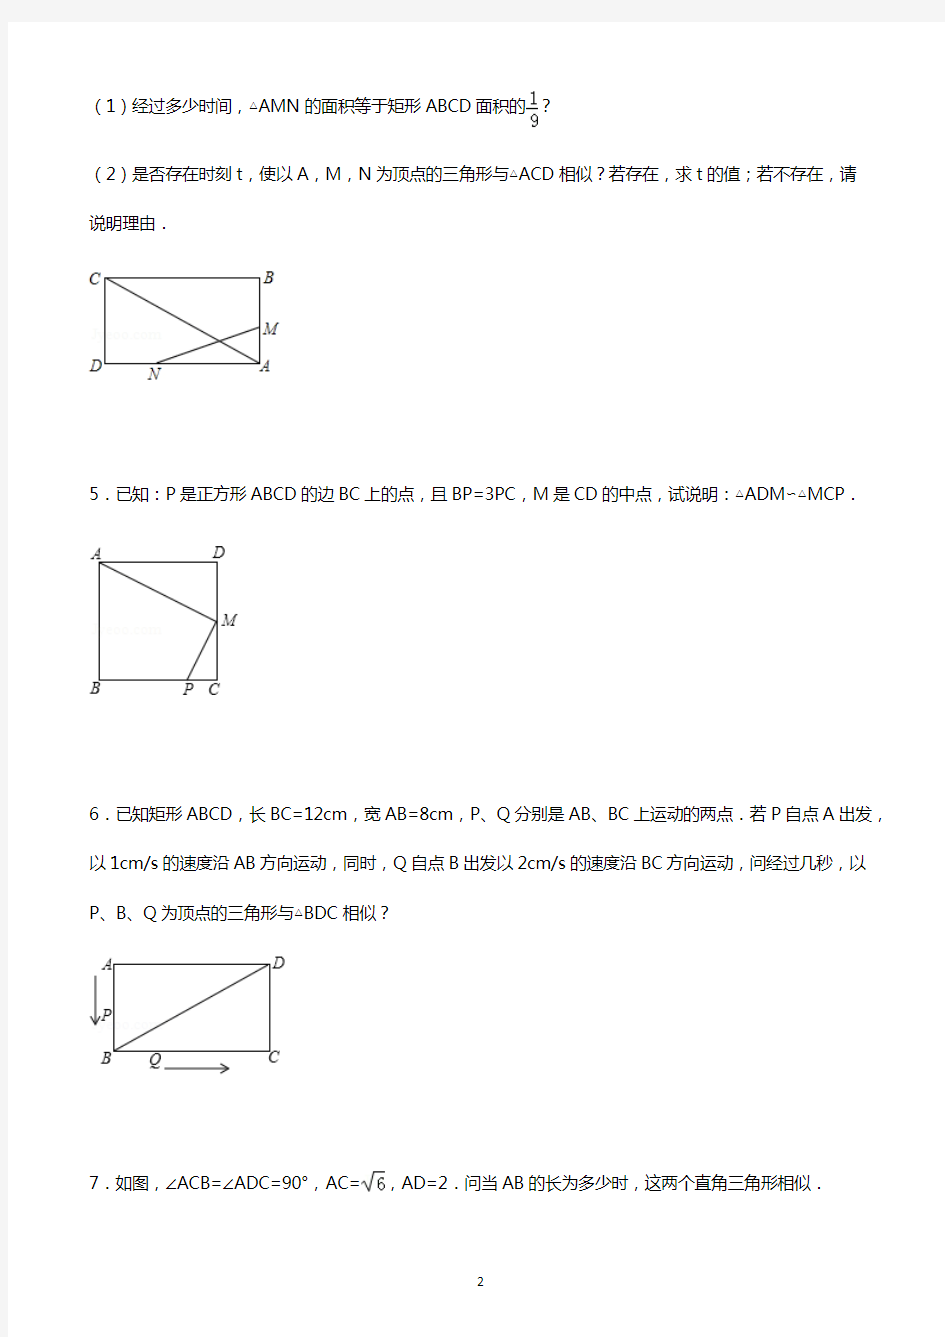 (完整版)初中数学经典相似三角形练习题(附参考答案)